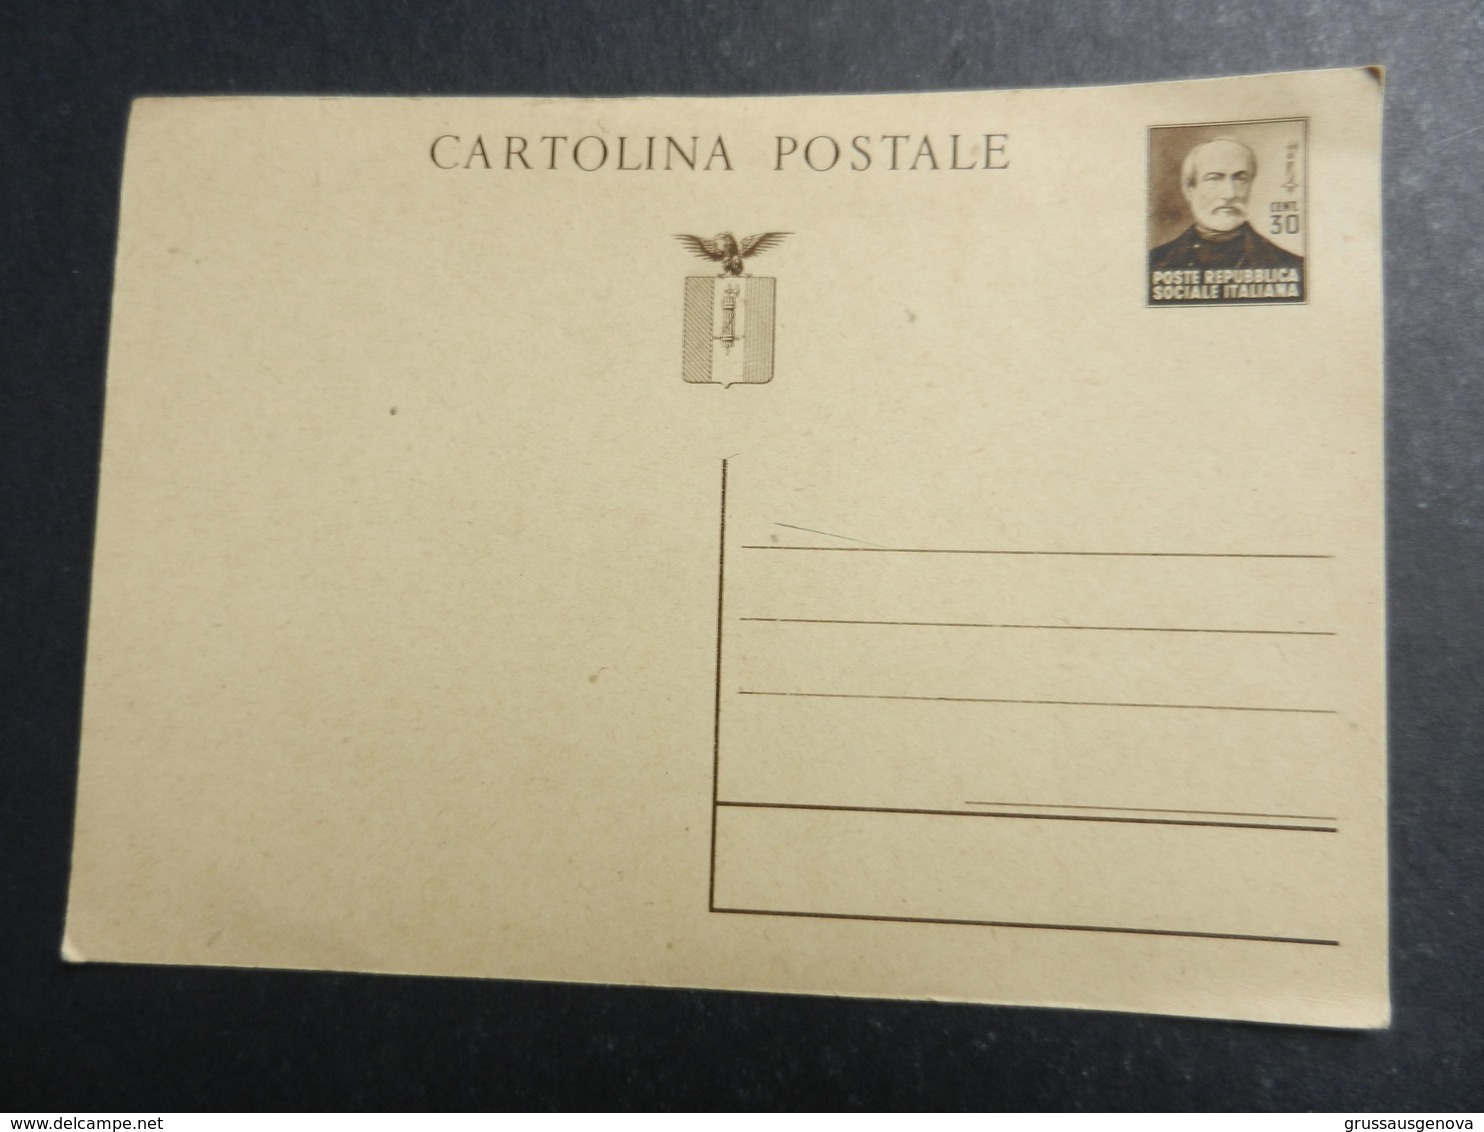 19955) REPUBBLICA SOCIALE ITALIANA CARTOLINA POSTALE 30 CENTESIMI MAZZINI NON VIAGGIATA - Stamped Stationery